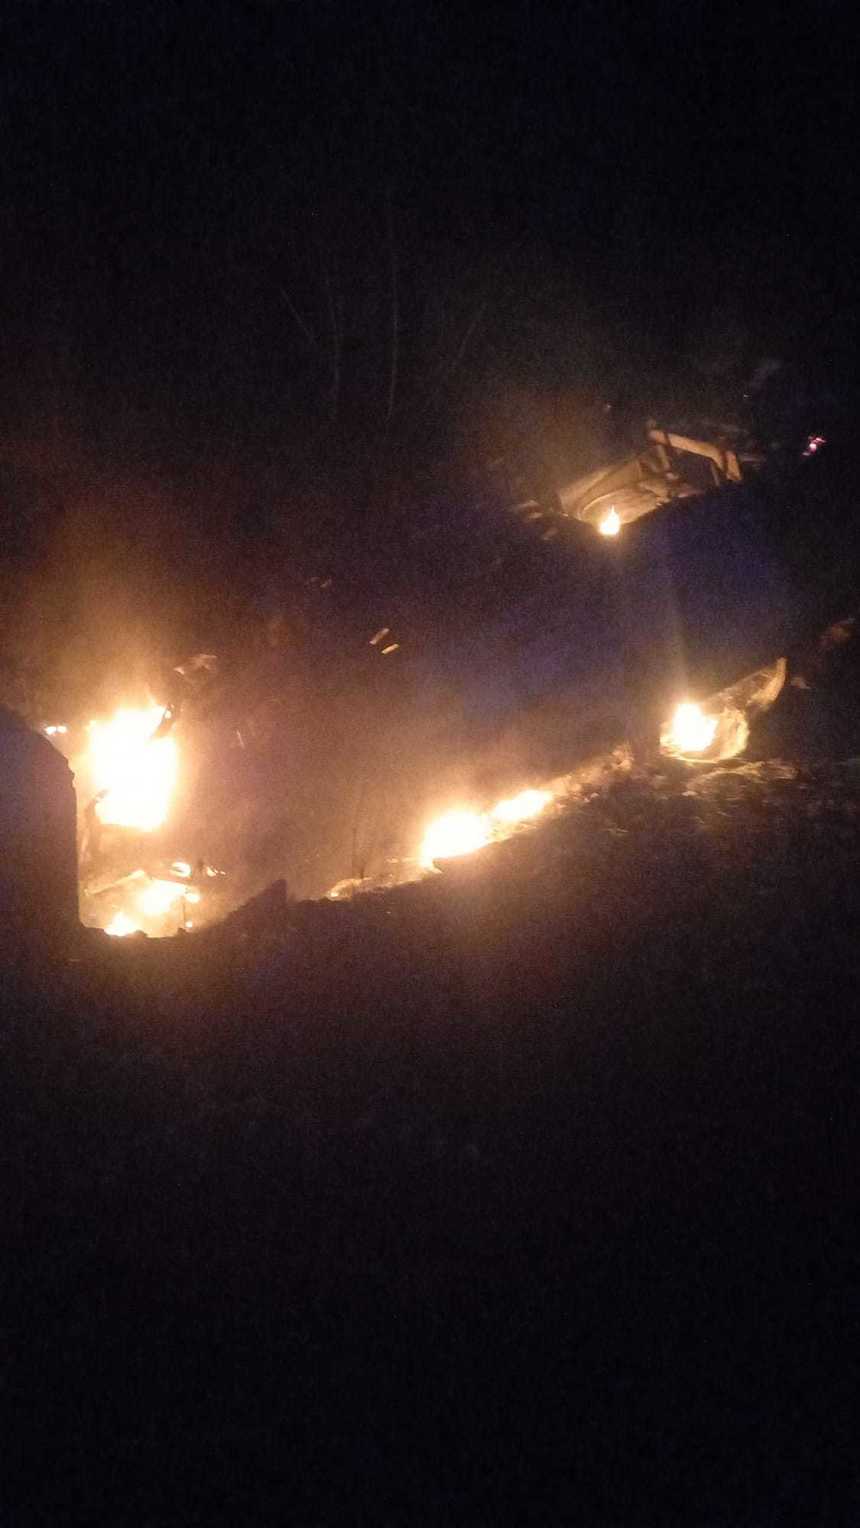 Bistriţa-Năsăud: O maşină a lovit un cap de pod, apoi a luat foc / Atoturismul a explodat / Şoferul a reuşit să iasă, fiind rănit uşor

